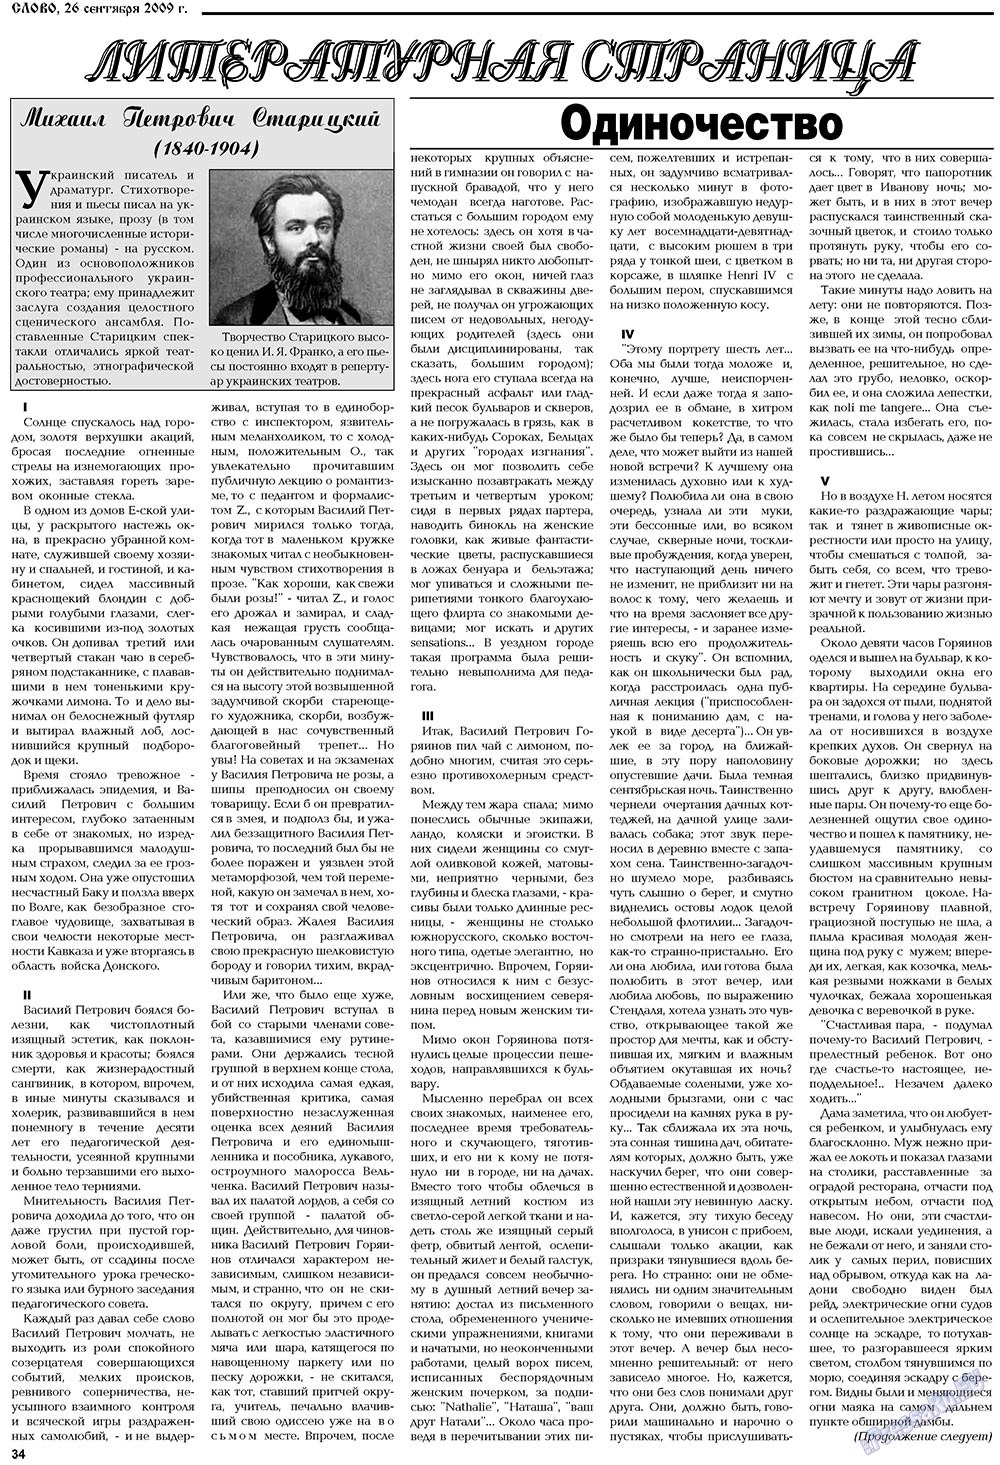 Slovo (Zeitung). 2009 Jahr, Ausgabe 39, Seite 34